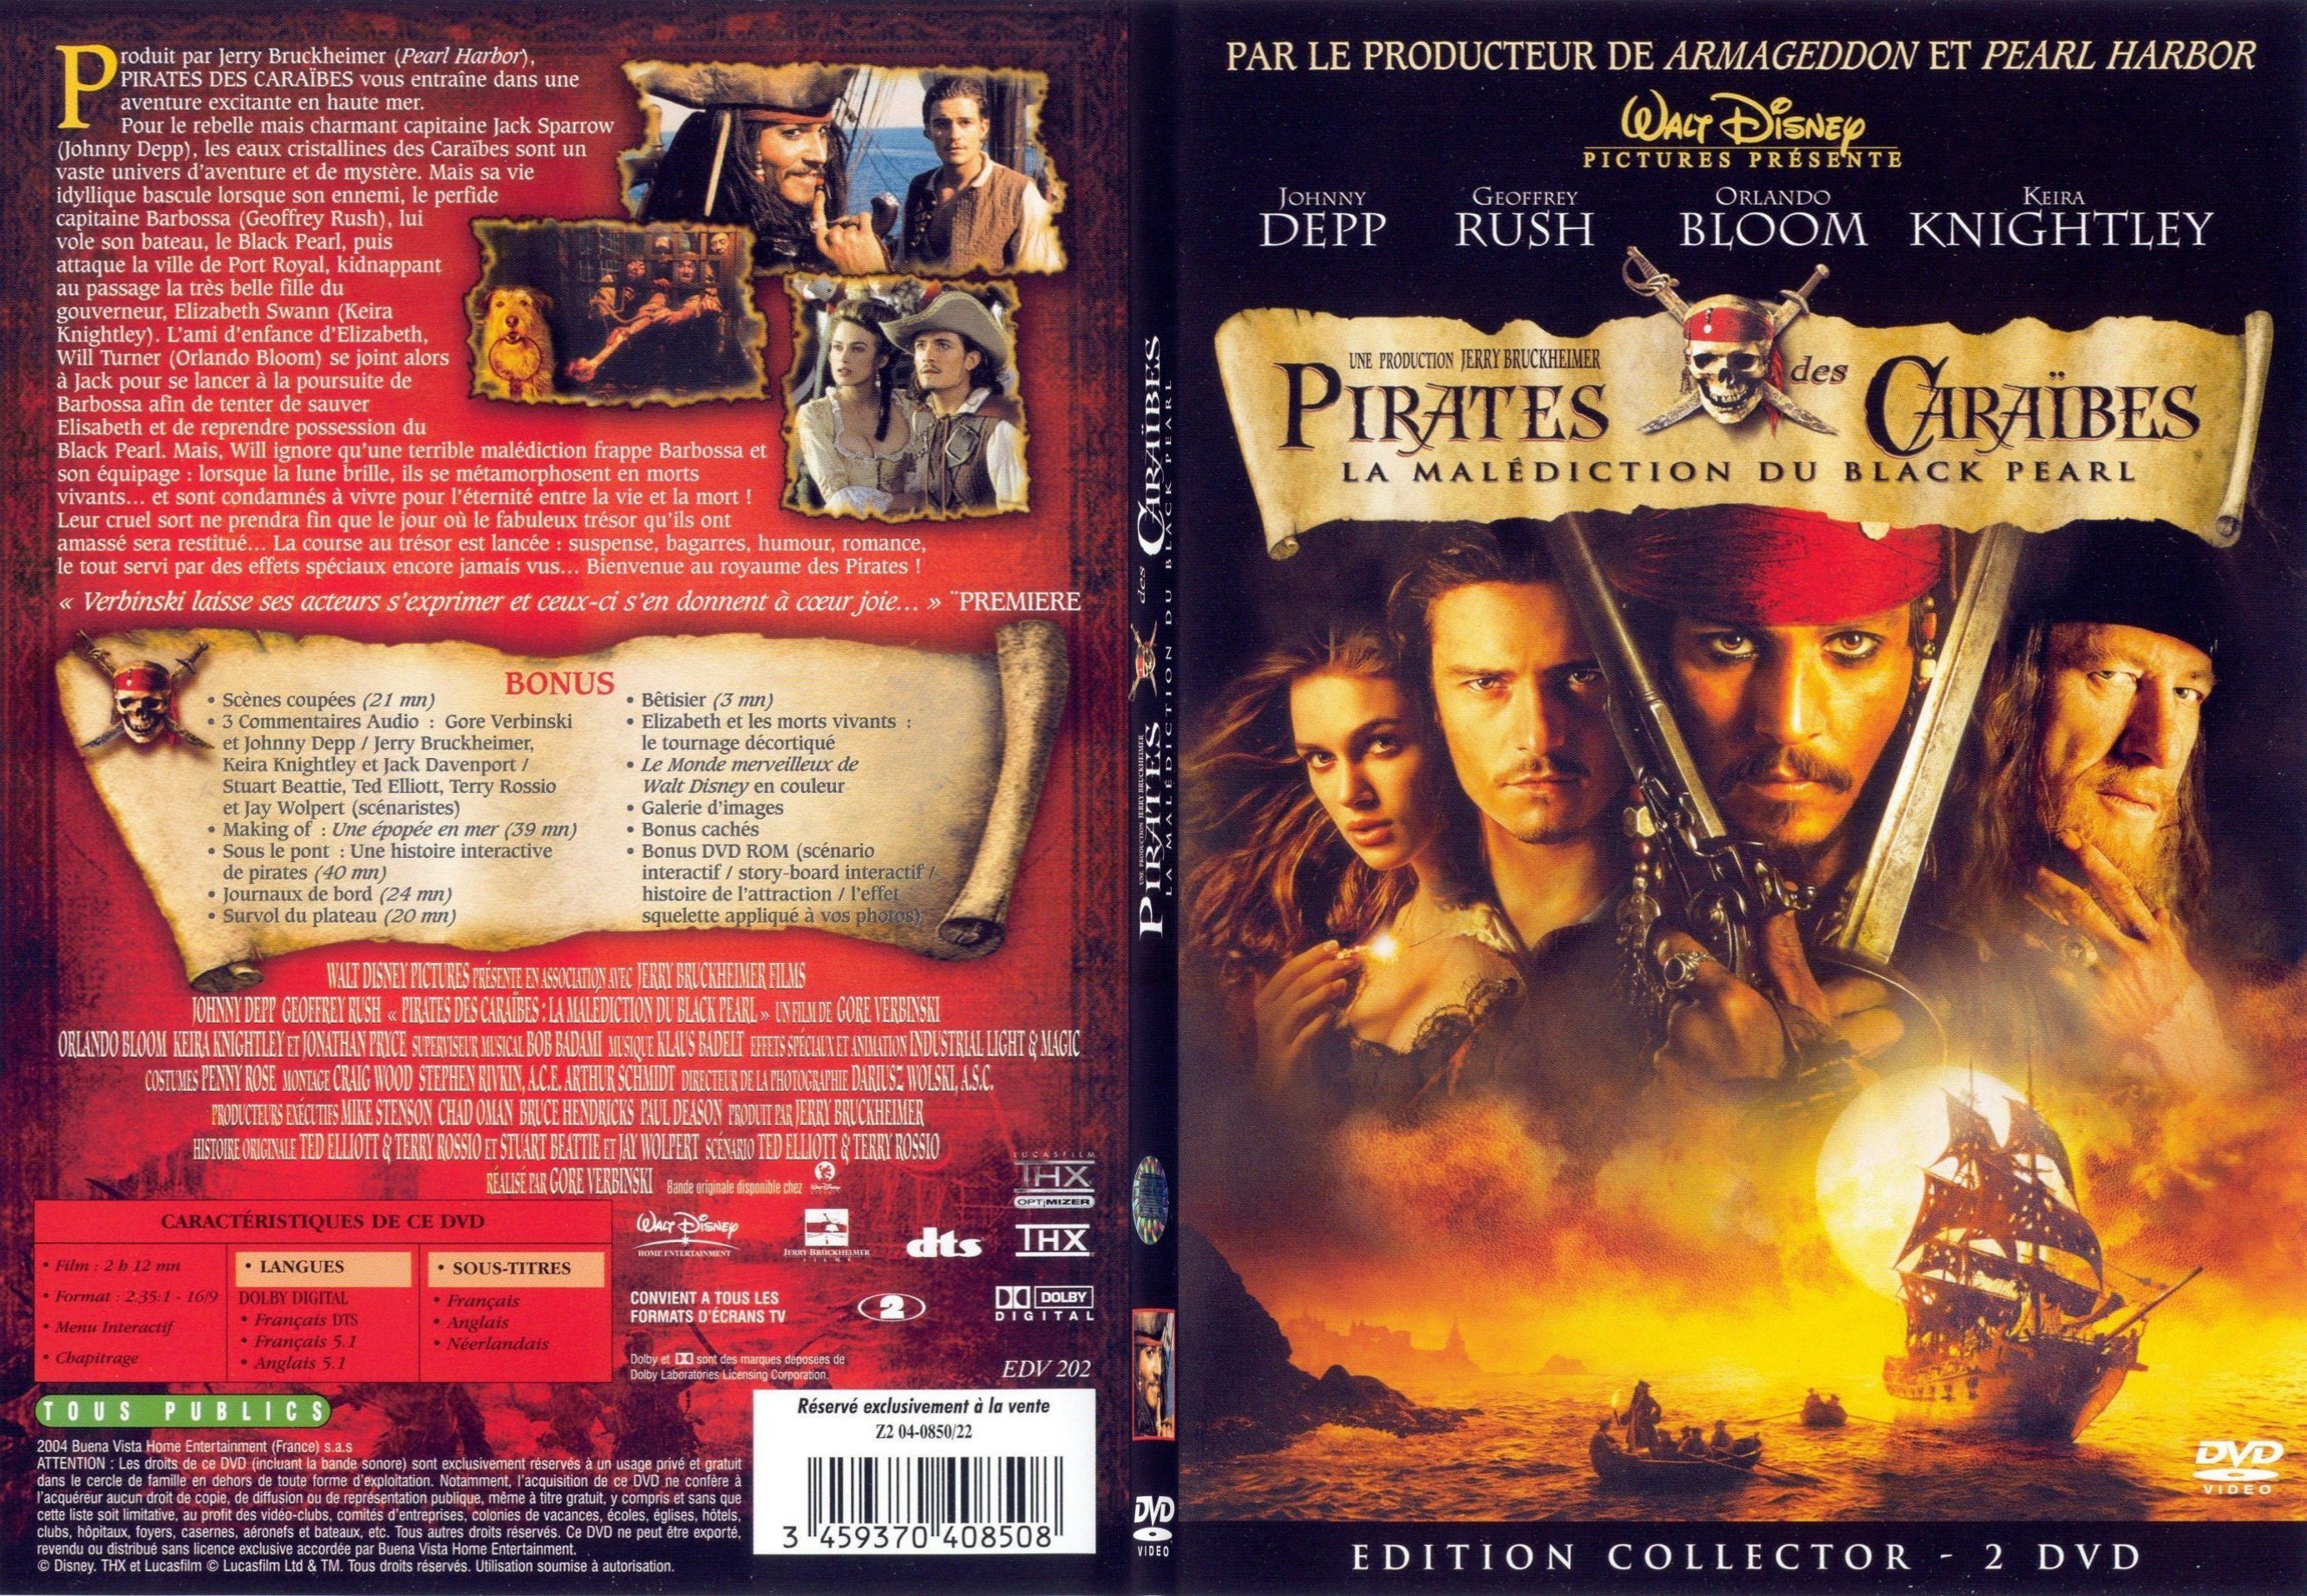 Jaquette DVD Pirates des Caraibes - SLIM